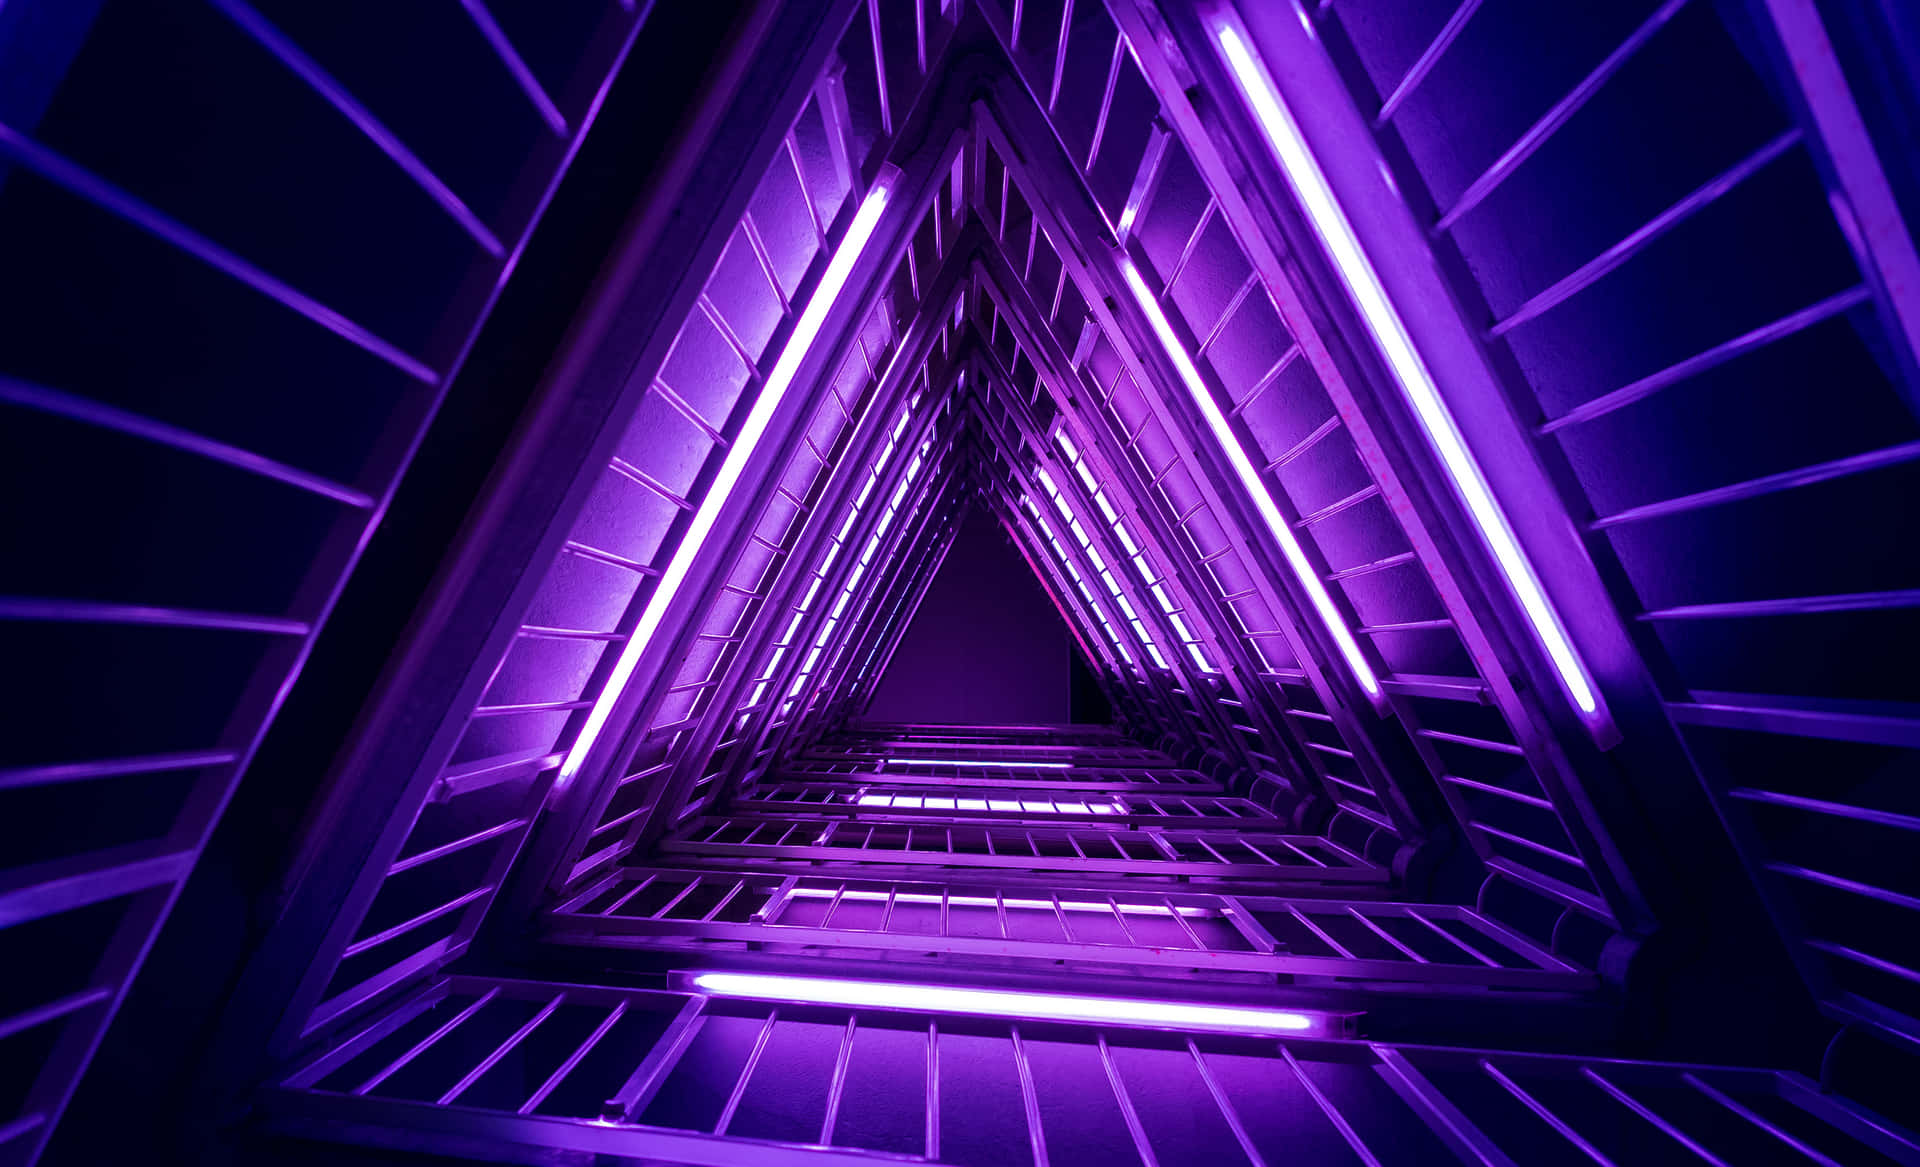 Erhelledeine Welt Mit Einem Ästhetisch Ansprechenden Purpurnen Neon-computer. Wallpaper